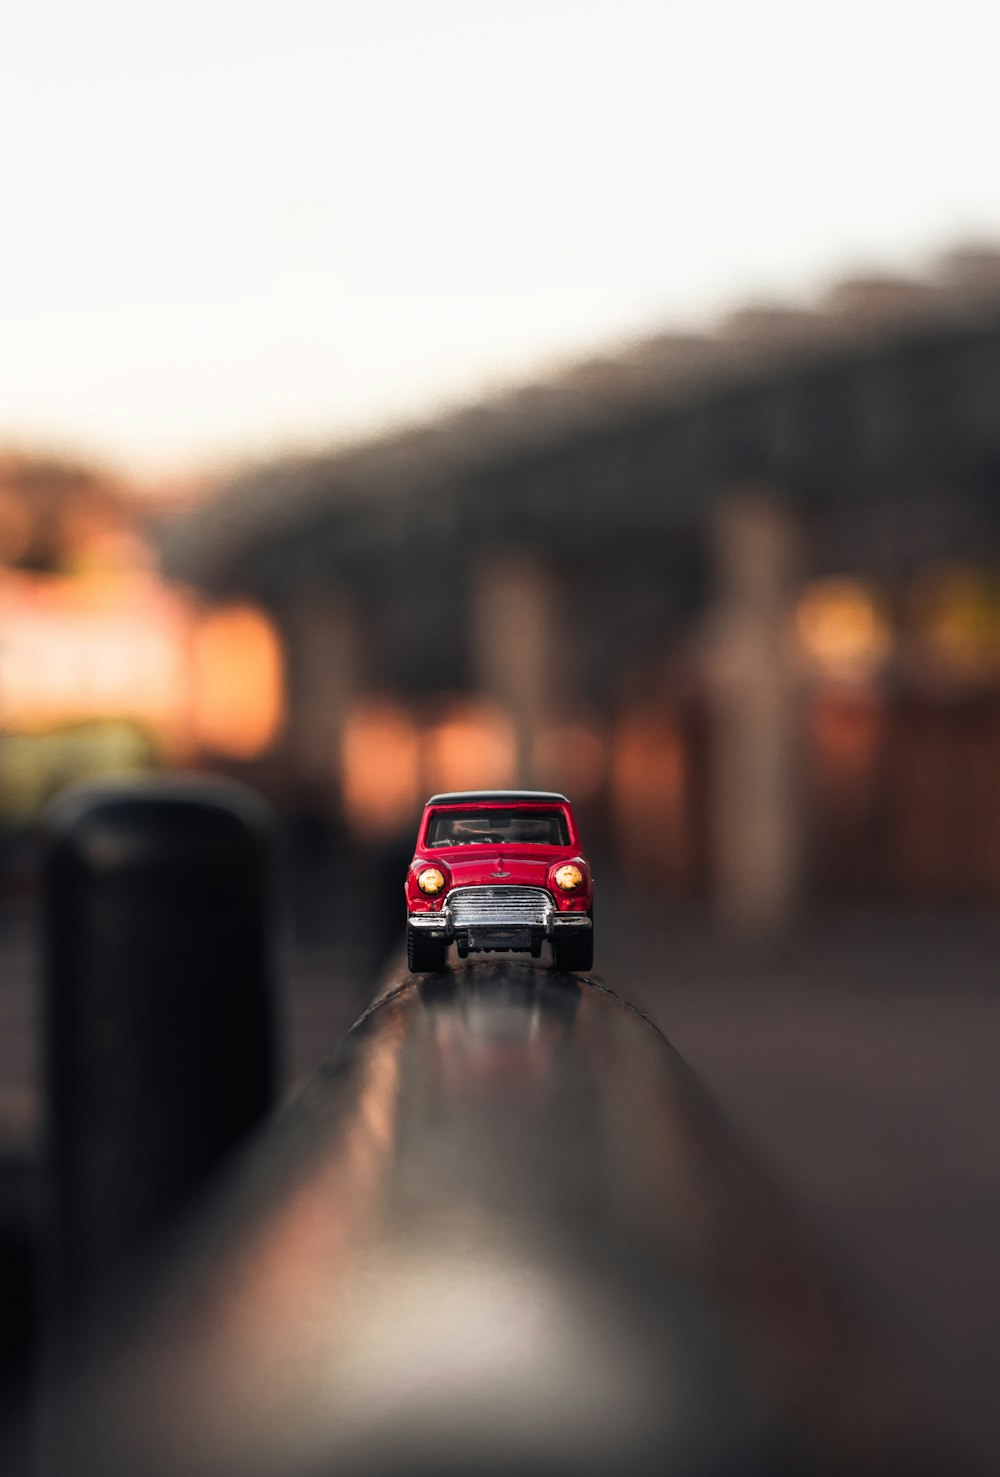 Flachfokusfotografie eines roten Die-Cast-Autos